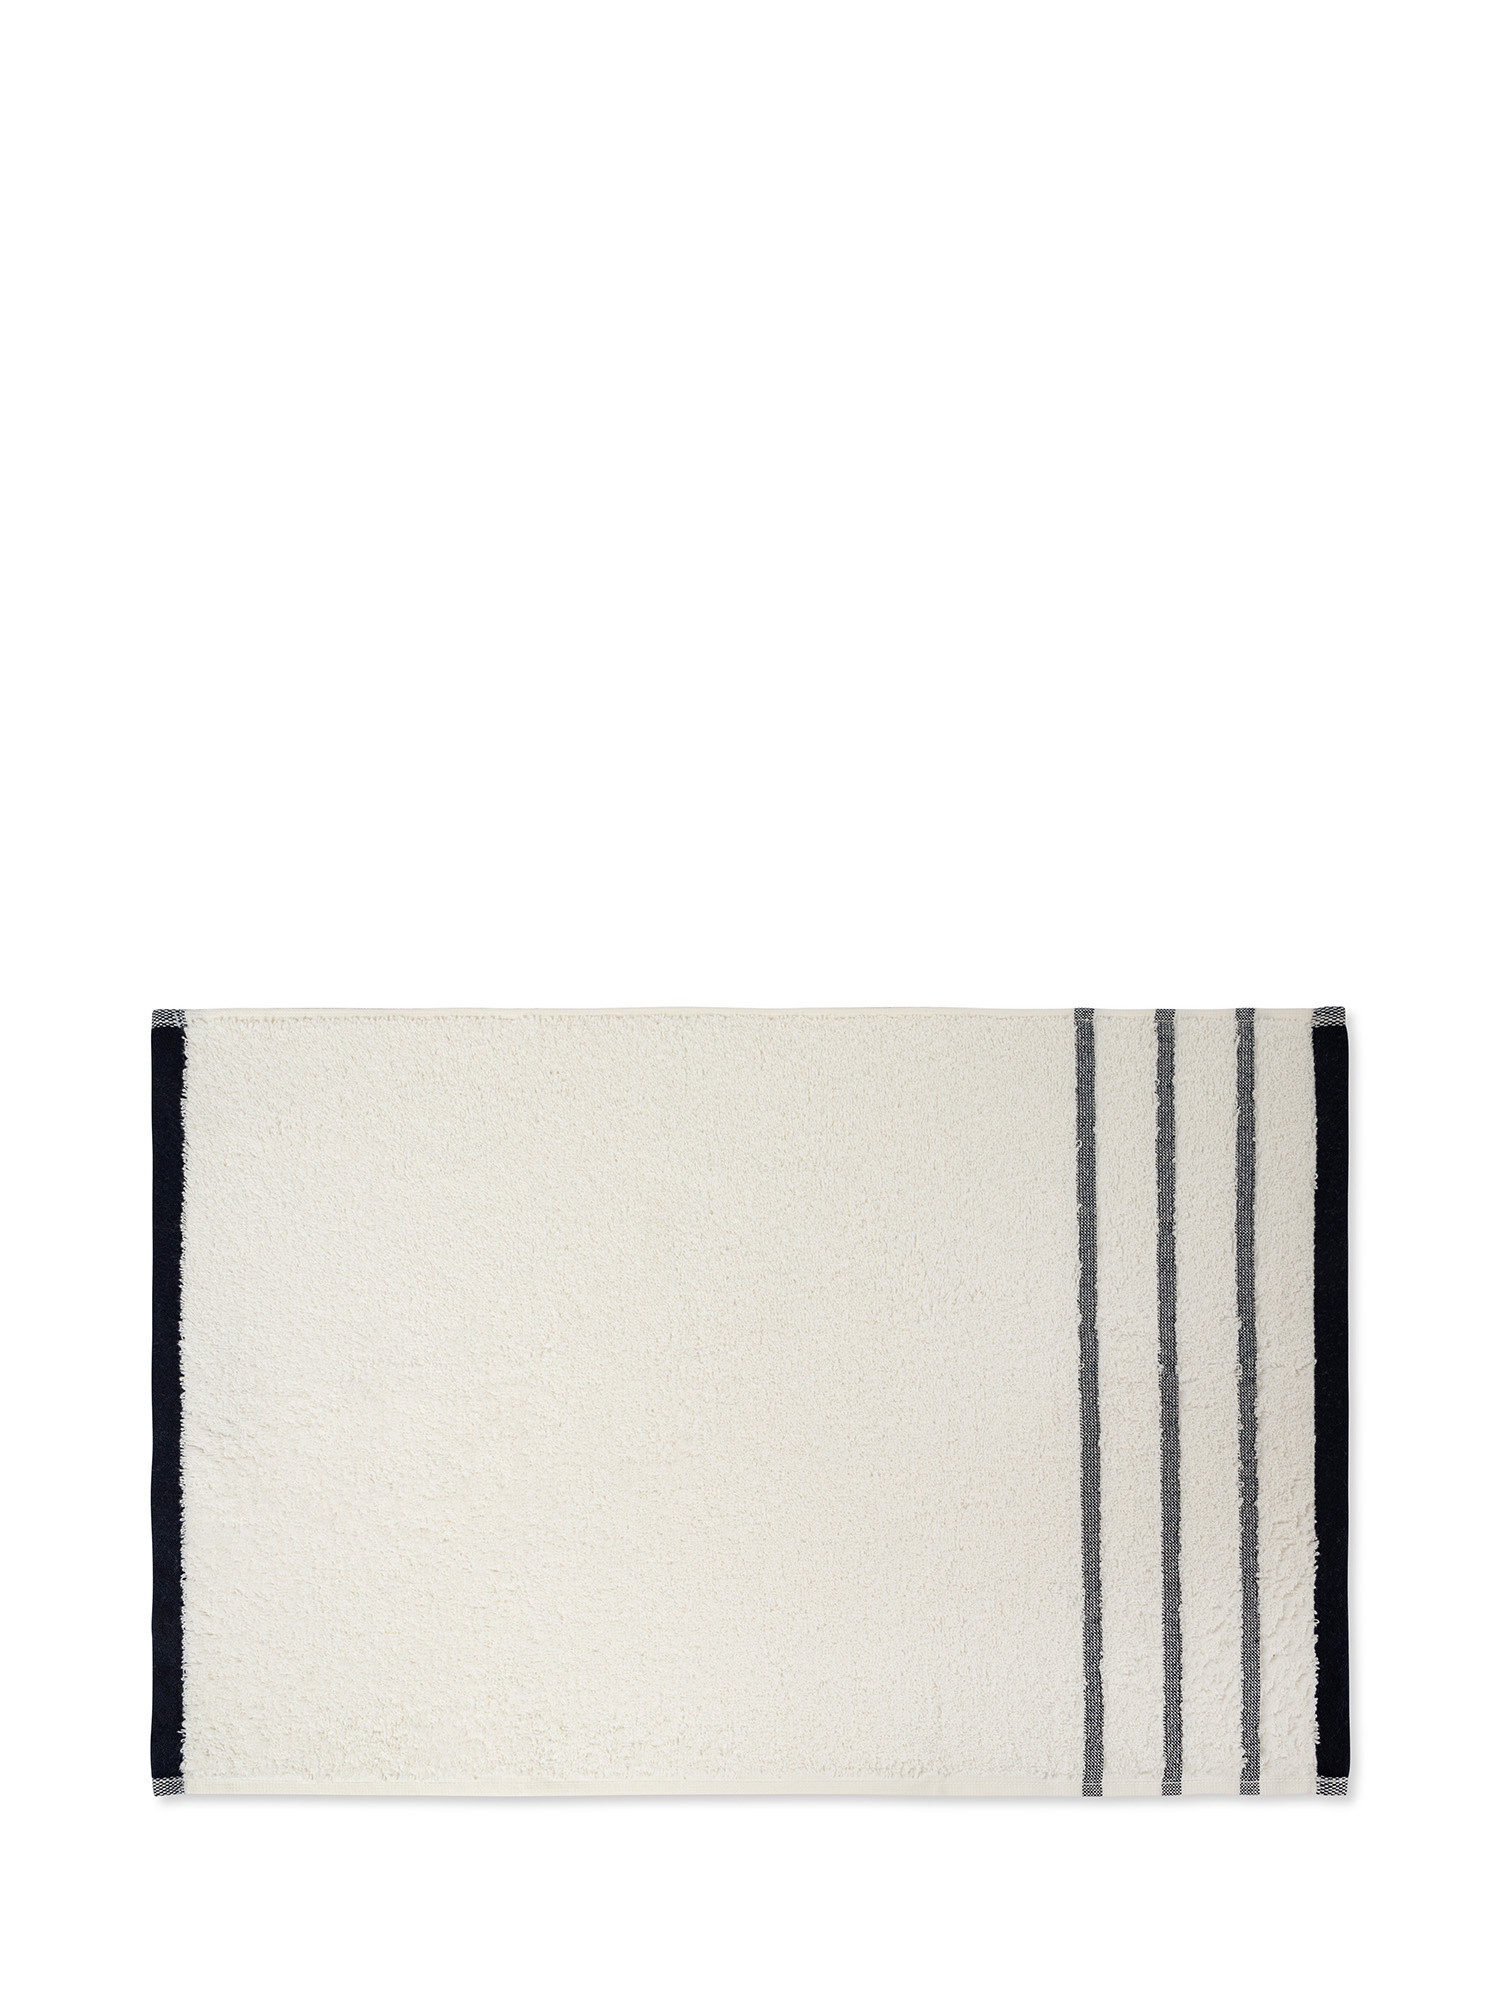 Asciugamano spugna di cotone motivo righe marinare, Bianco, large image number 1